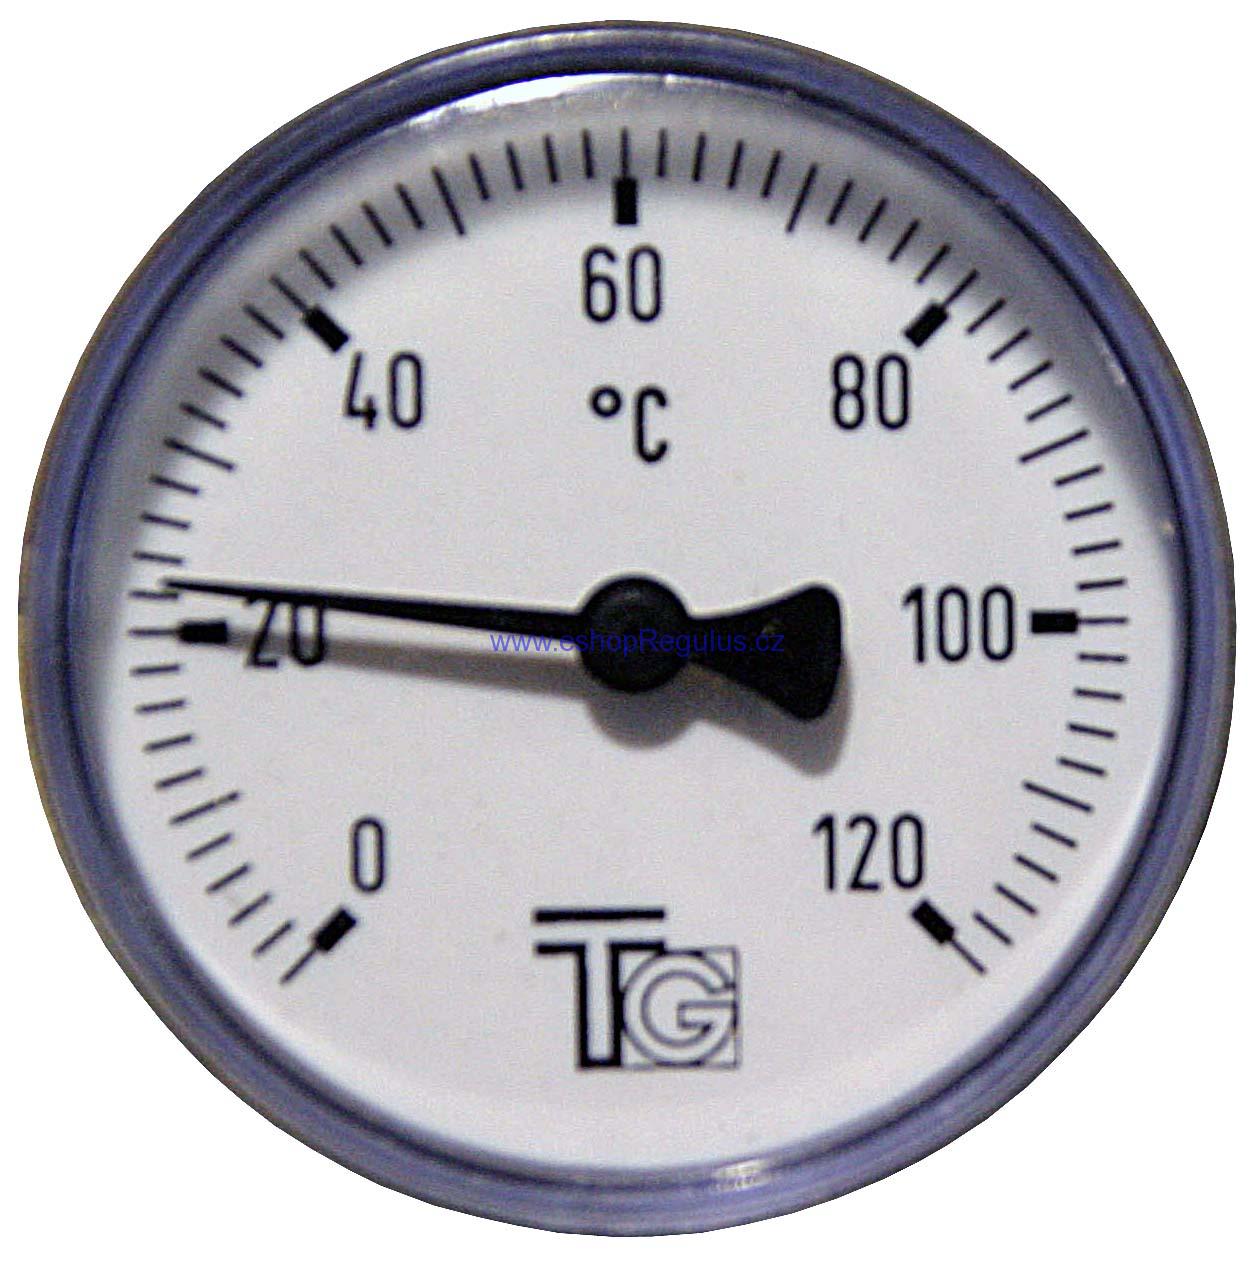 Teploměr d=63 s jímkou l= 40 1/2“, zadní, 0-120°C